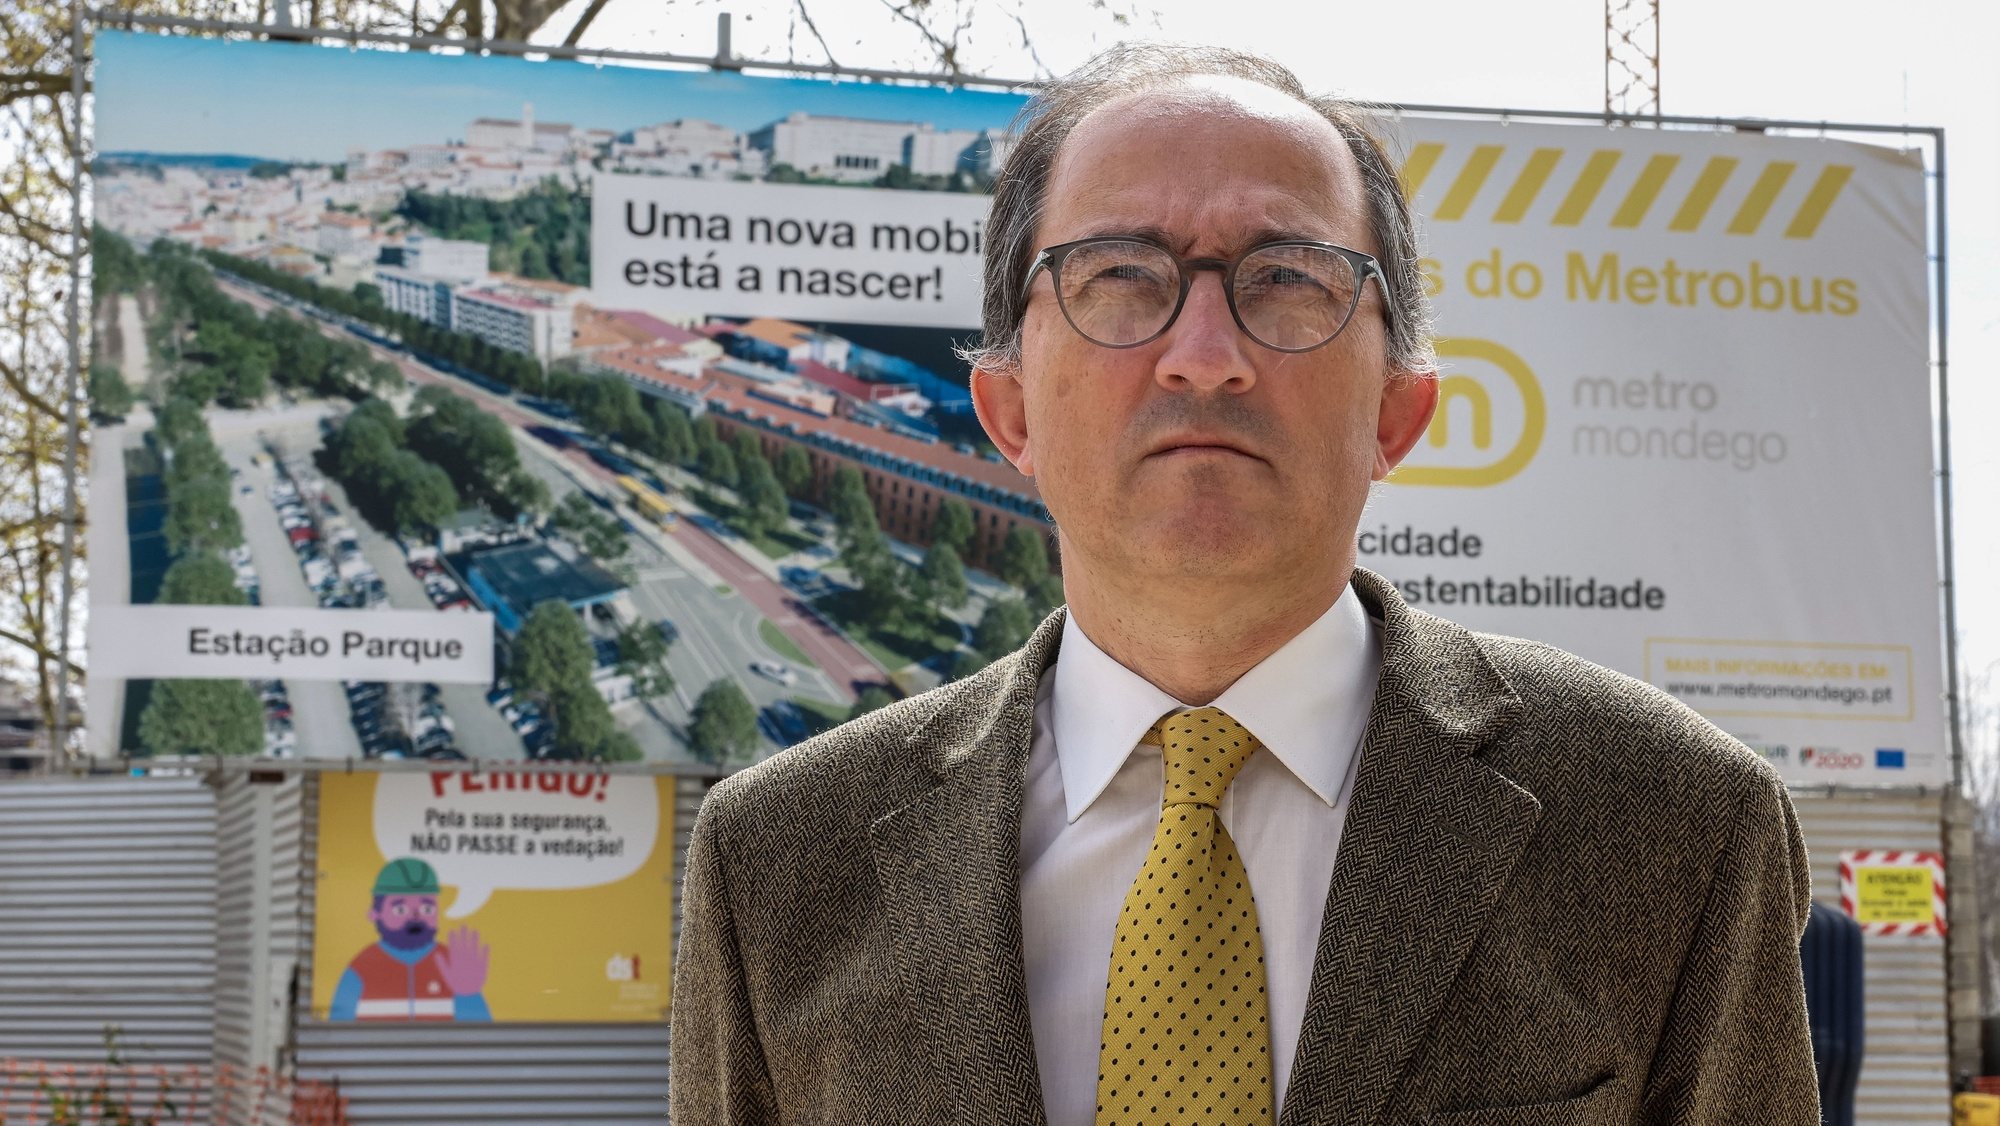 O presidente do Metro Mondego, João Marrana, durante uma entrevista à Agência Lusa sobre as obras e o projeto do Metrobus, de mobilidade de Mondego, em Coimbra, 16 de março de 2023. (ACOMPANHA TEXTO DE 19 DE MARÇO DE 2023). PAULO NOVAIS/LUSA